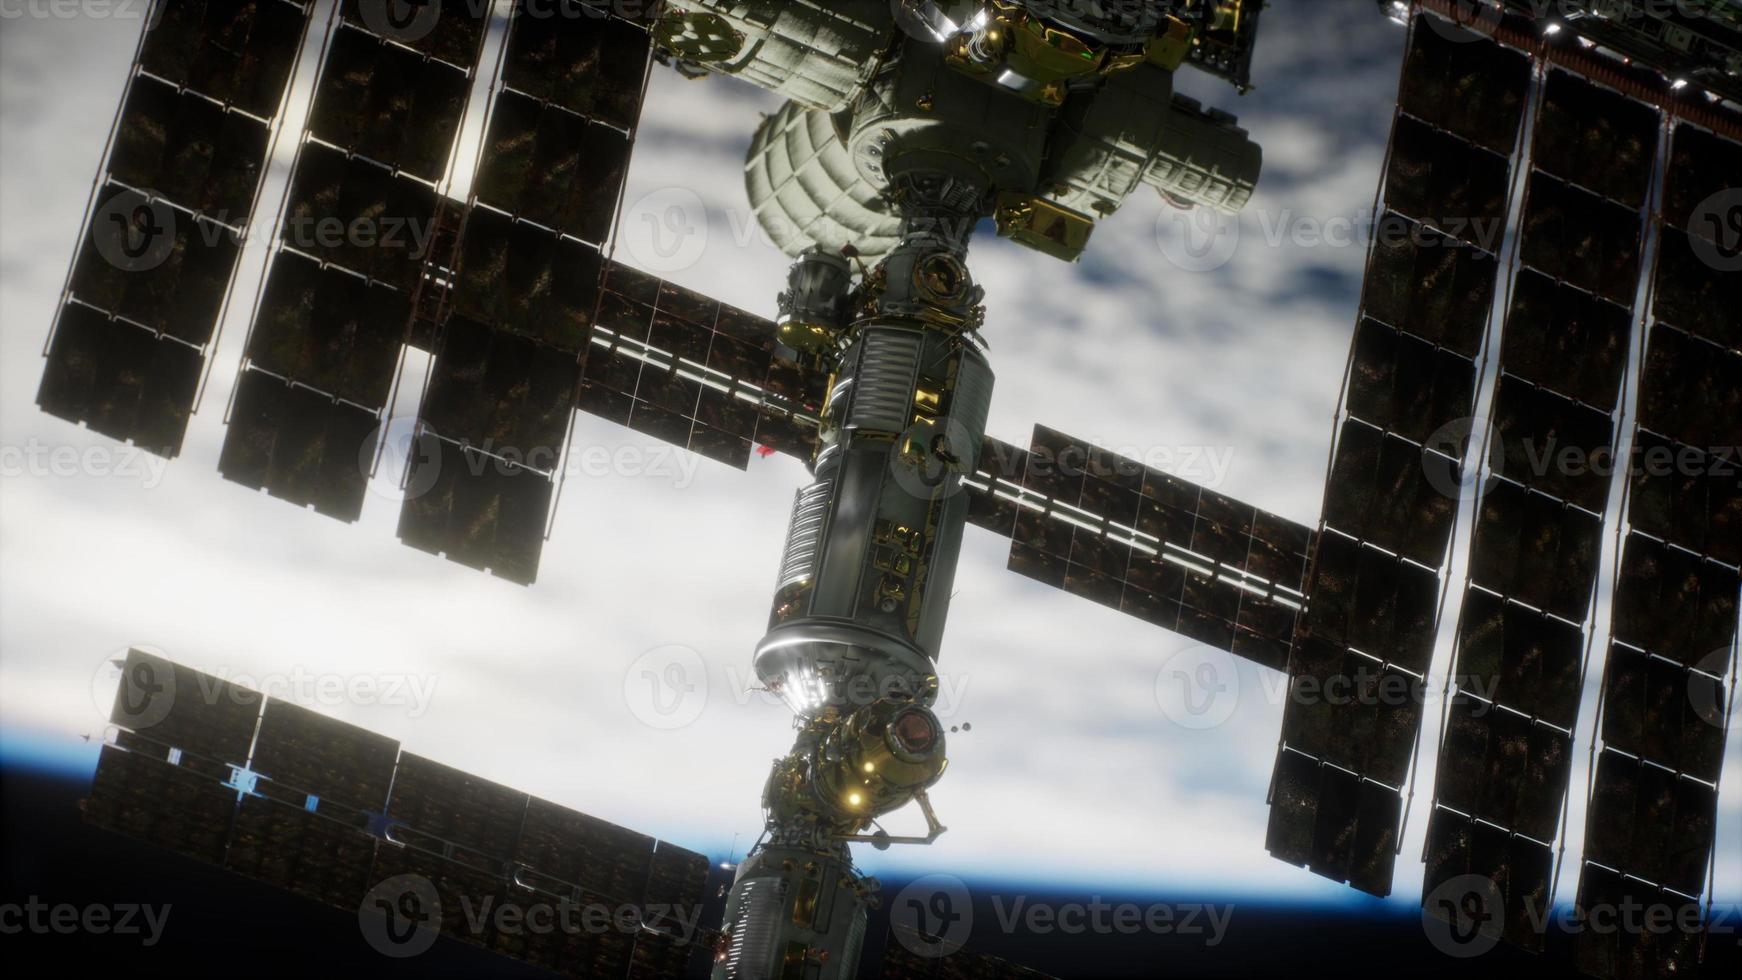 internationaal ruimtestation over de aarde-elementen ingericht door nasa foto